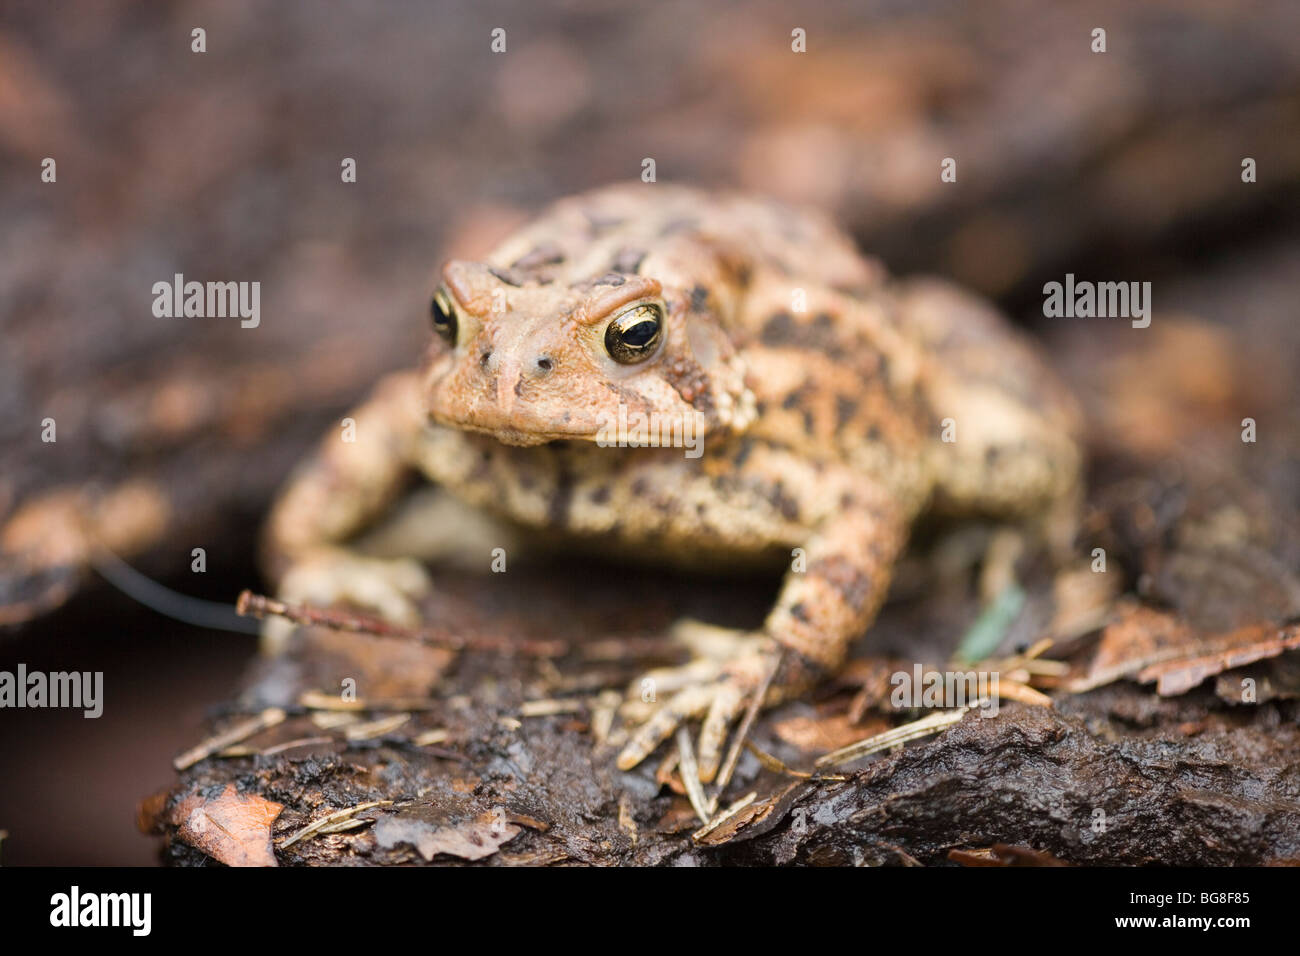 American Toad (Bufo americana). Posizione degli occhi consente la visione stereoscopica, critico per un predatori di invertebrati cacciatore di cibo. Foto Stock